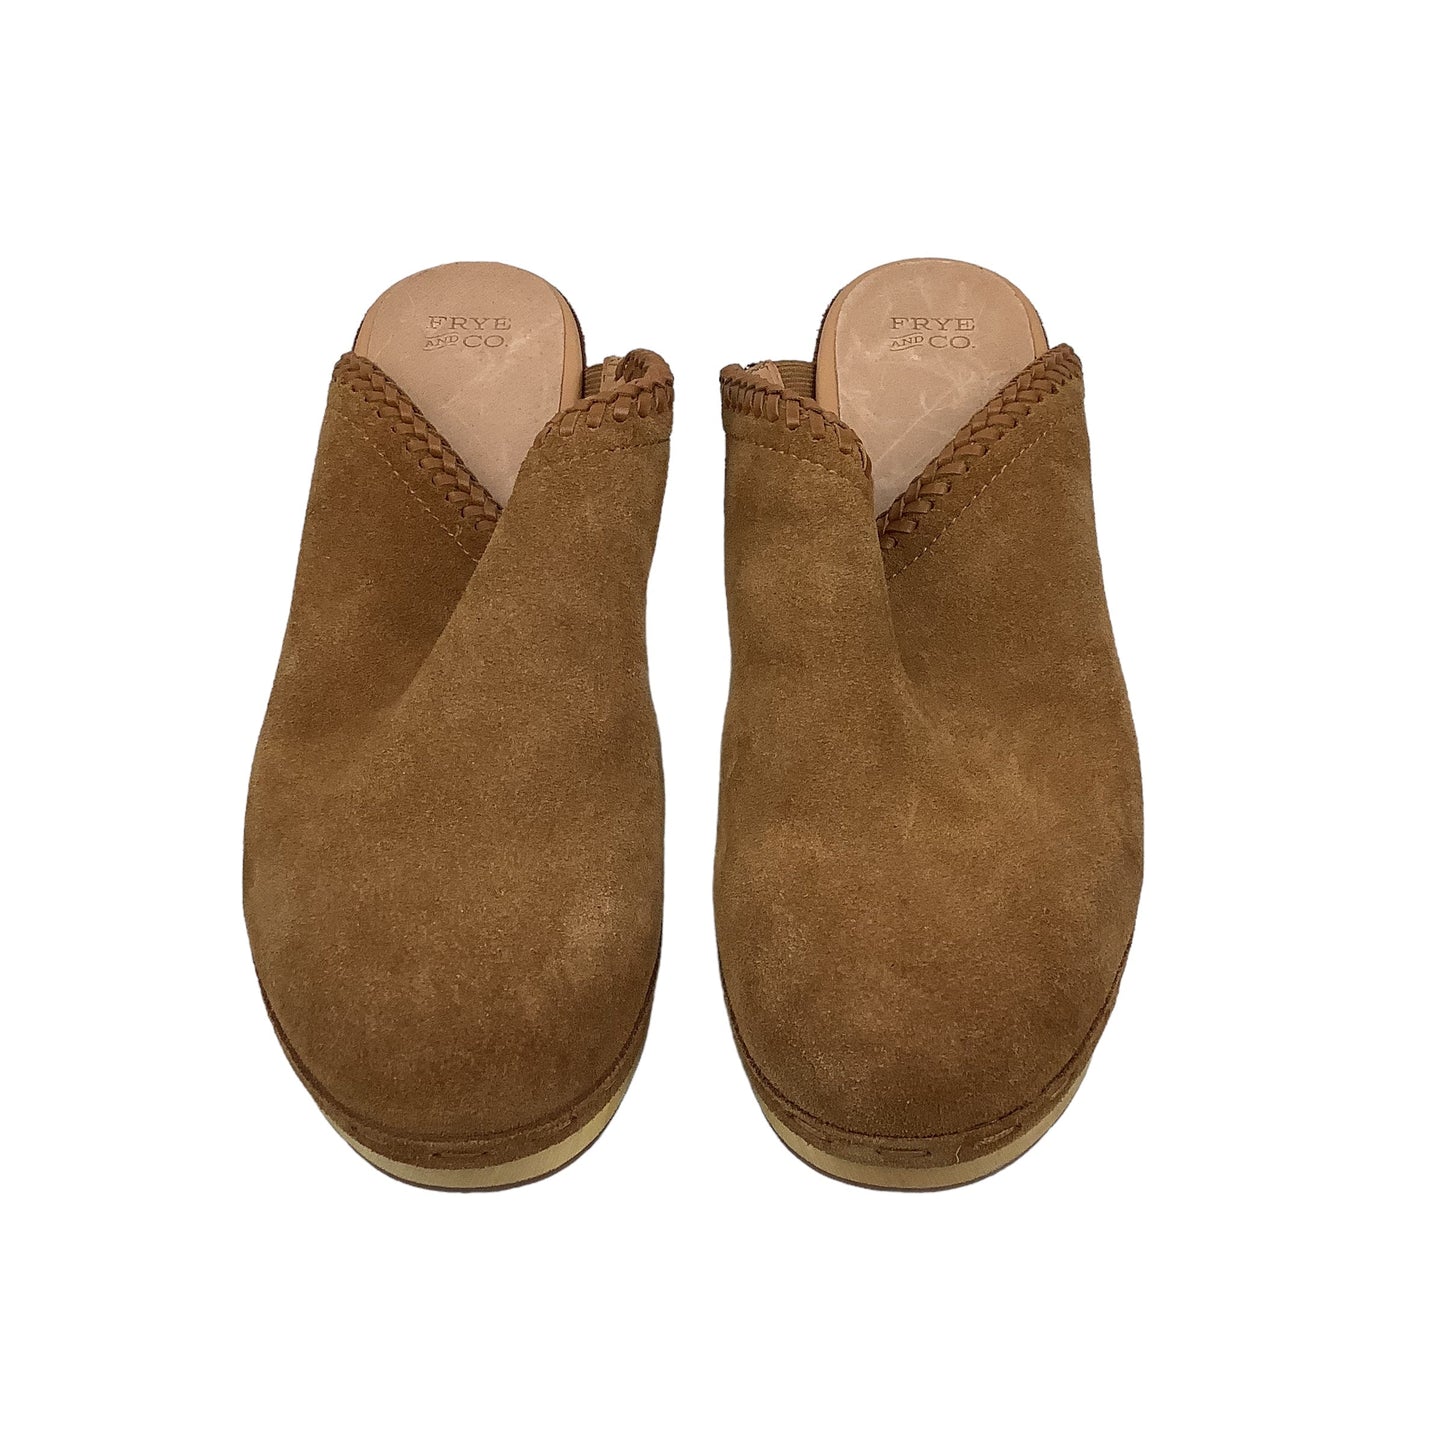 Beige Sandals Heels Block Frye And Co, Size 9.5